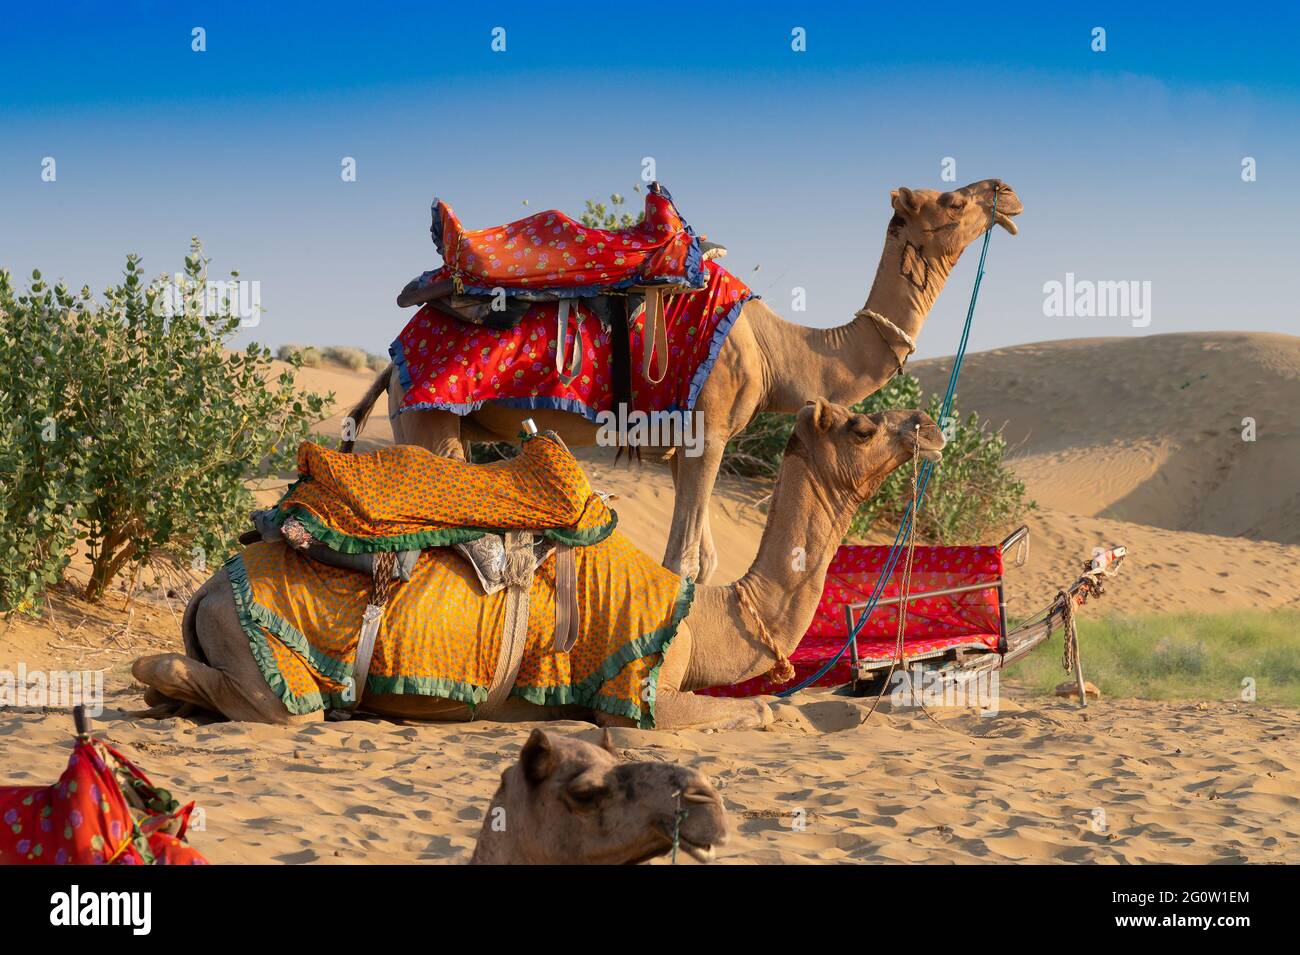 Les chameaux, Camelus dromedarius, sont de grands animaux désertiques à bout égal avec une bosse sur son dos.deux chameaux avec des robes traditionnelles, attendent les touristes Banque D'Images